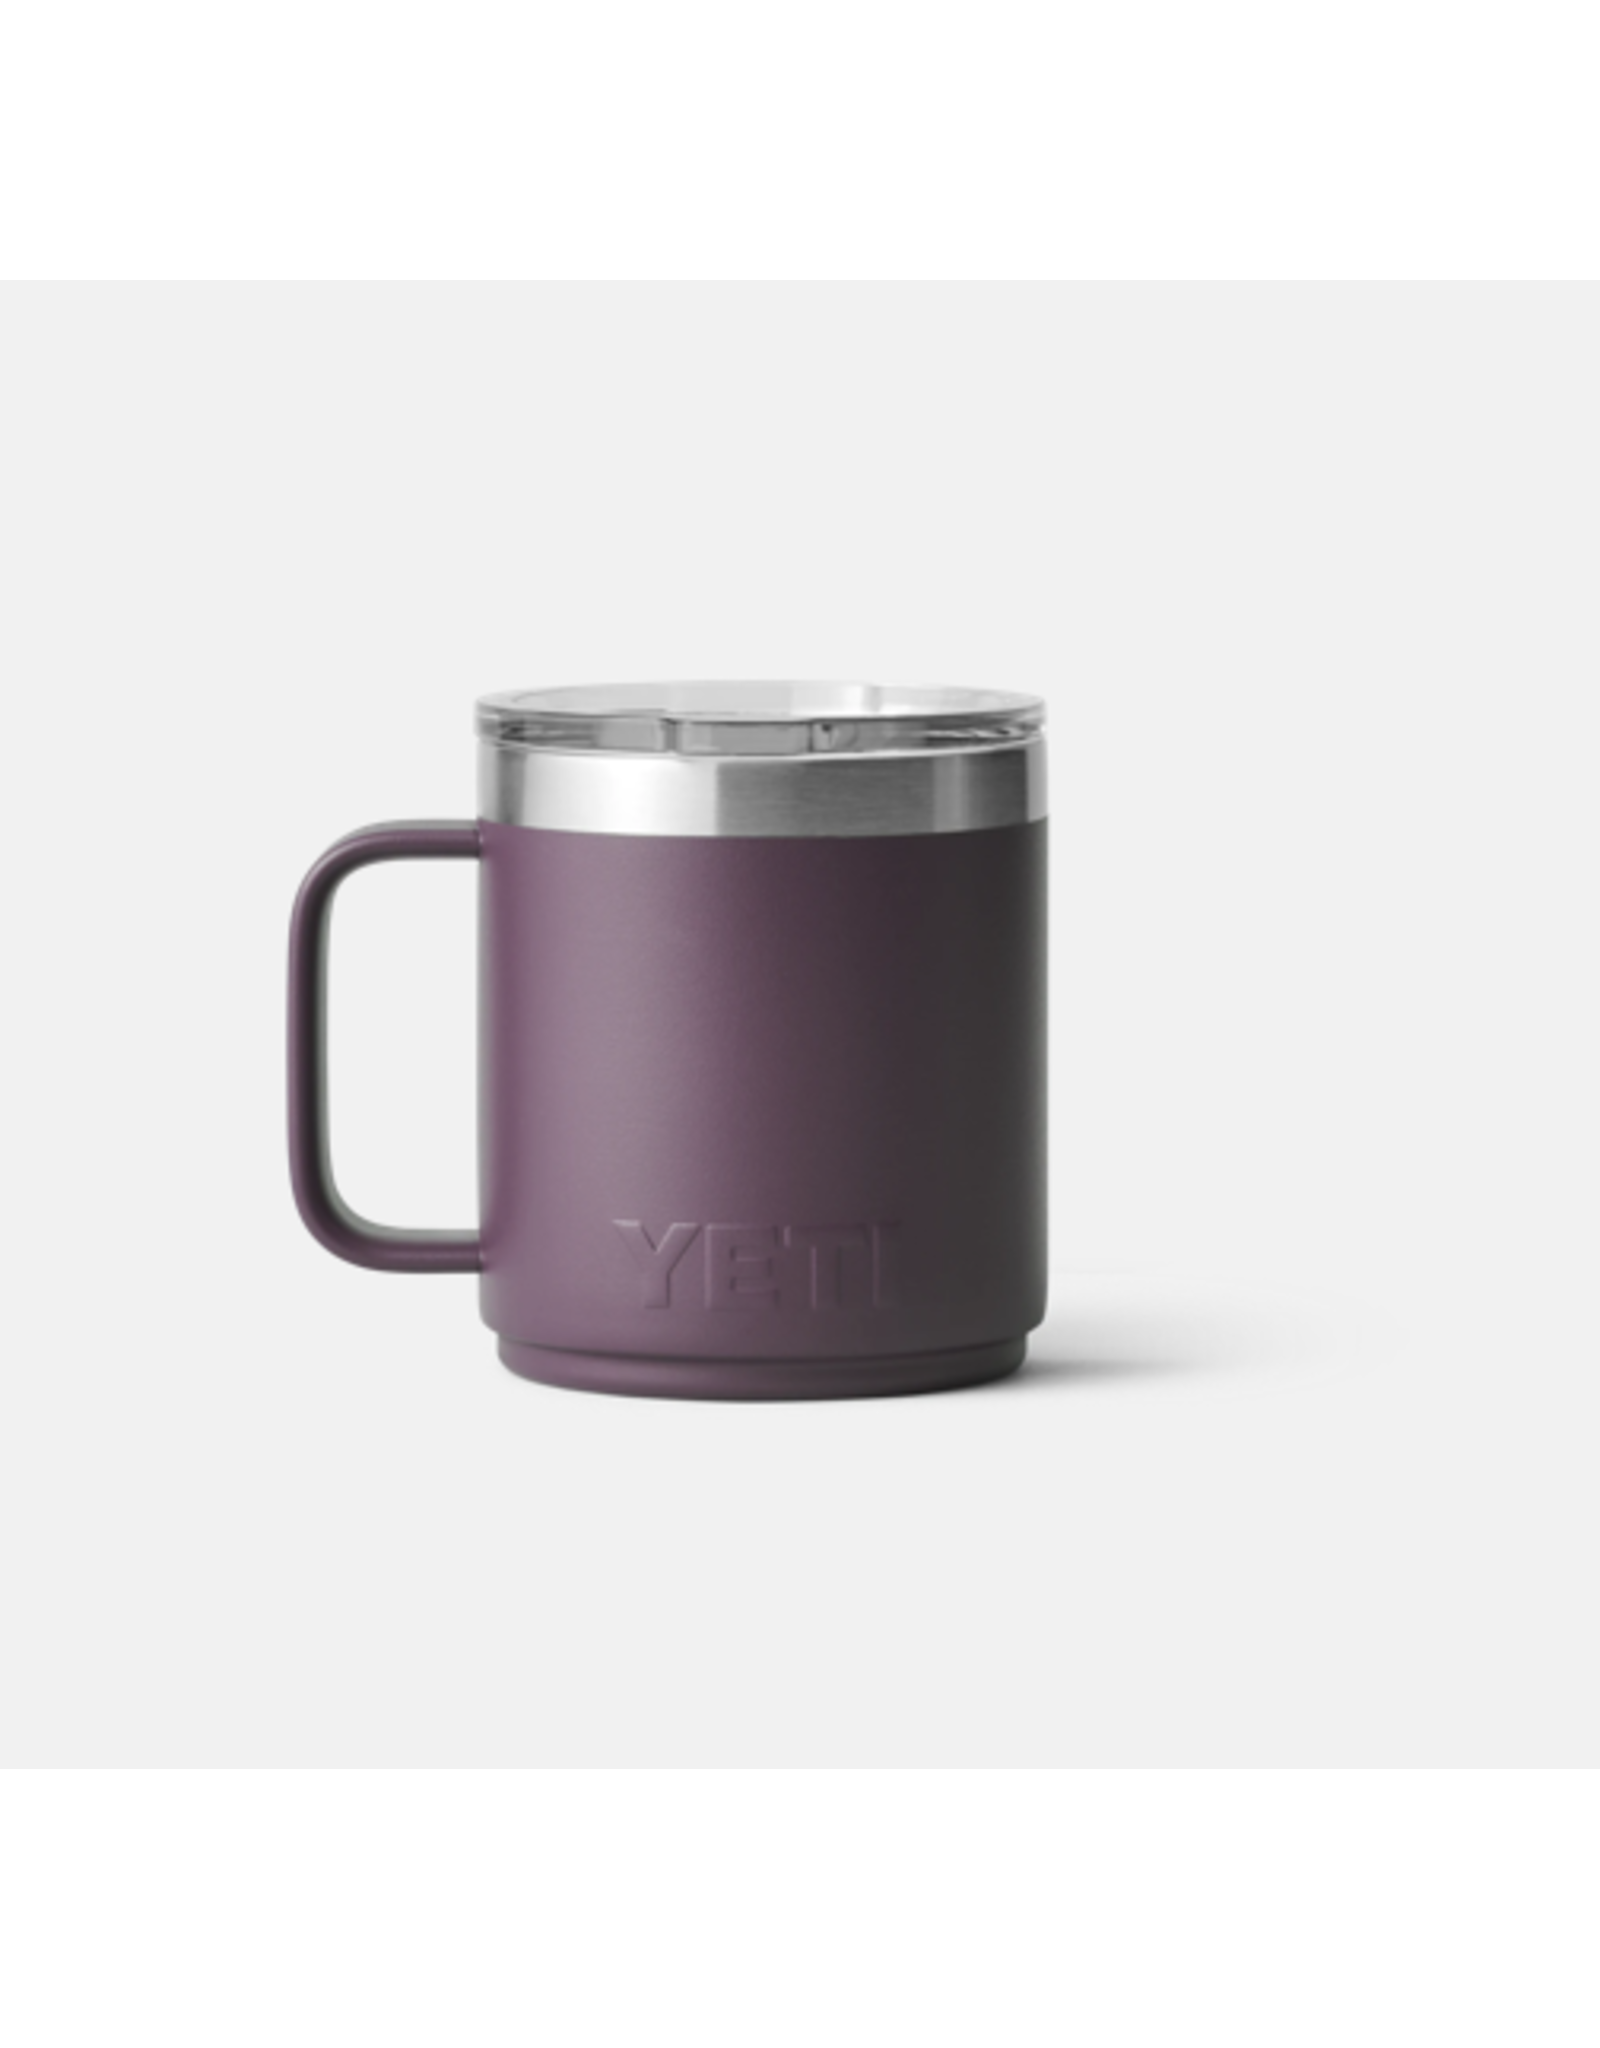 Yeti Rambler 10oz Mug Nordic Purple